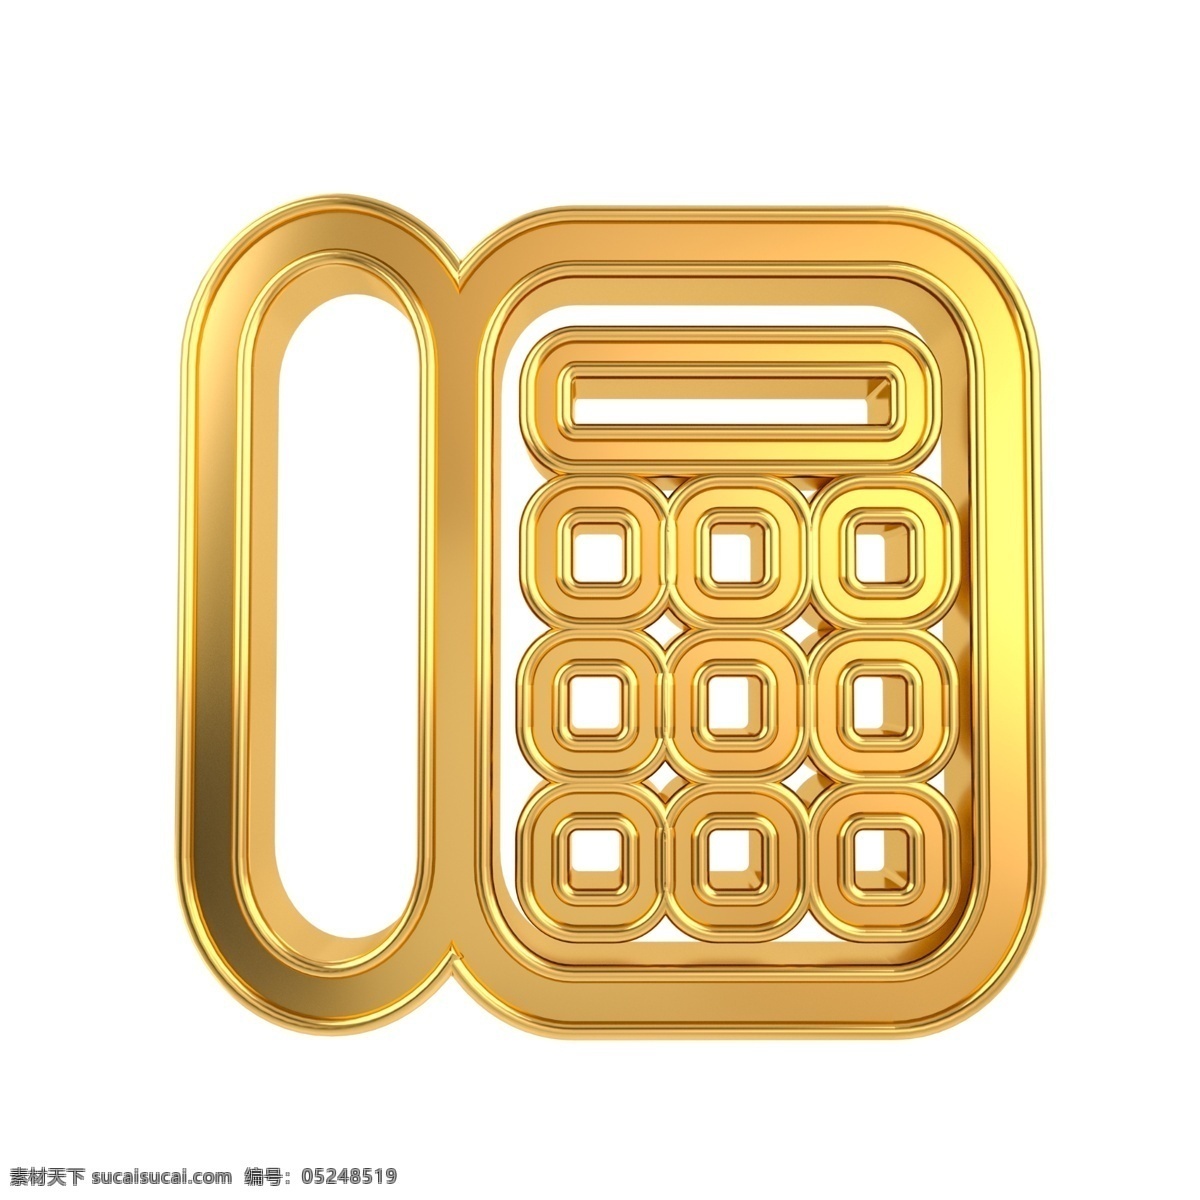 c4d 金属 立体 电话 图标 3d 金属质感 金色 名片设计 常用 电话图标 固定电话 平面设计配图